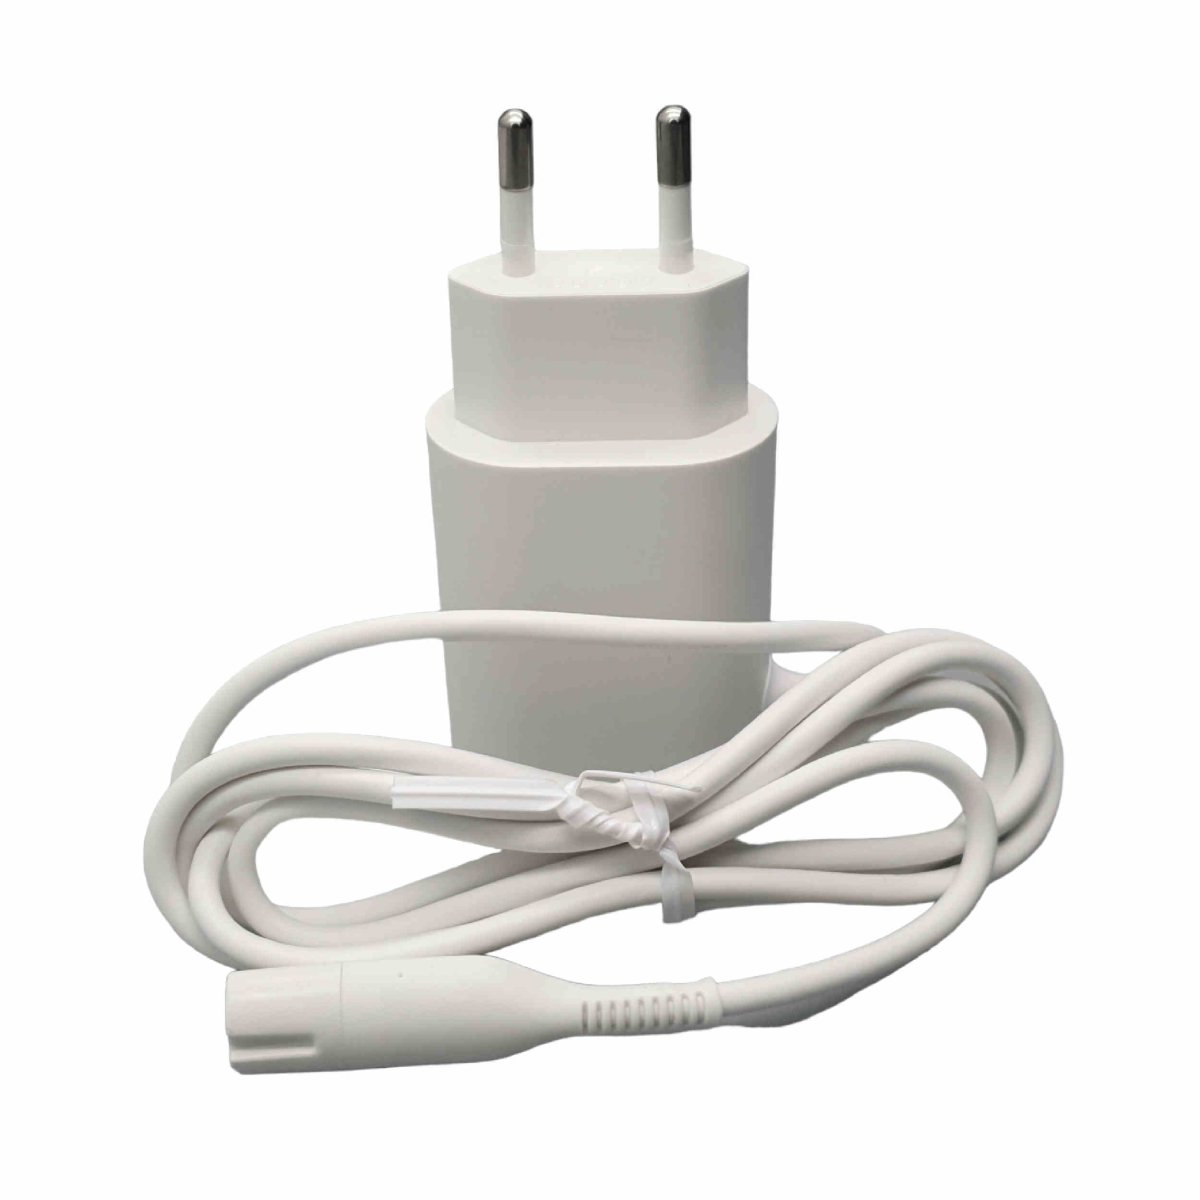 Braun Oral-B Stecker Netzteil Smart Plug 12 Volt 5217 mit Kabel Silk-é,  19,85 €